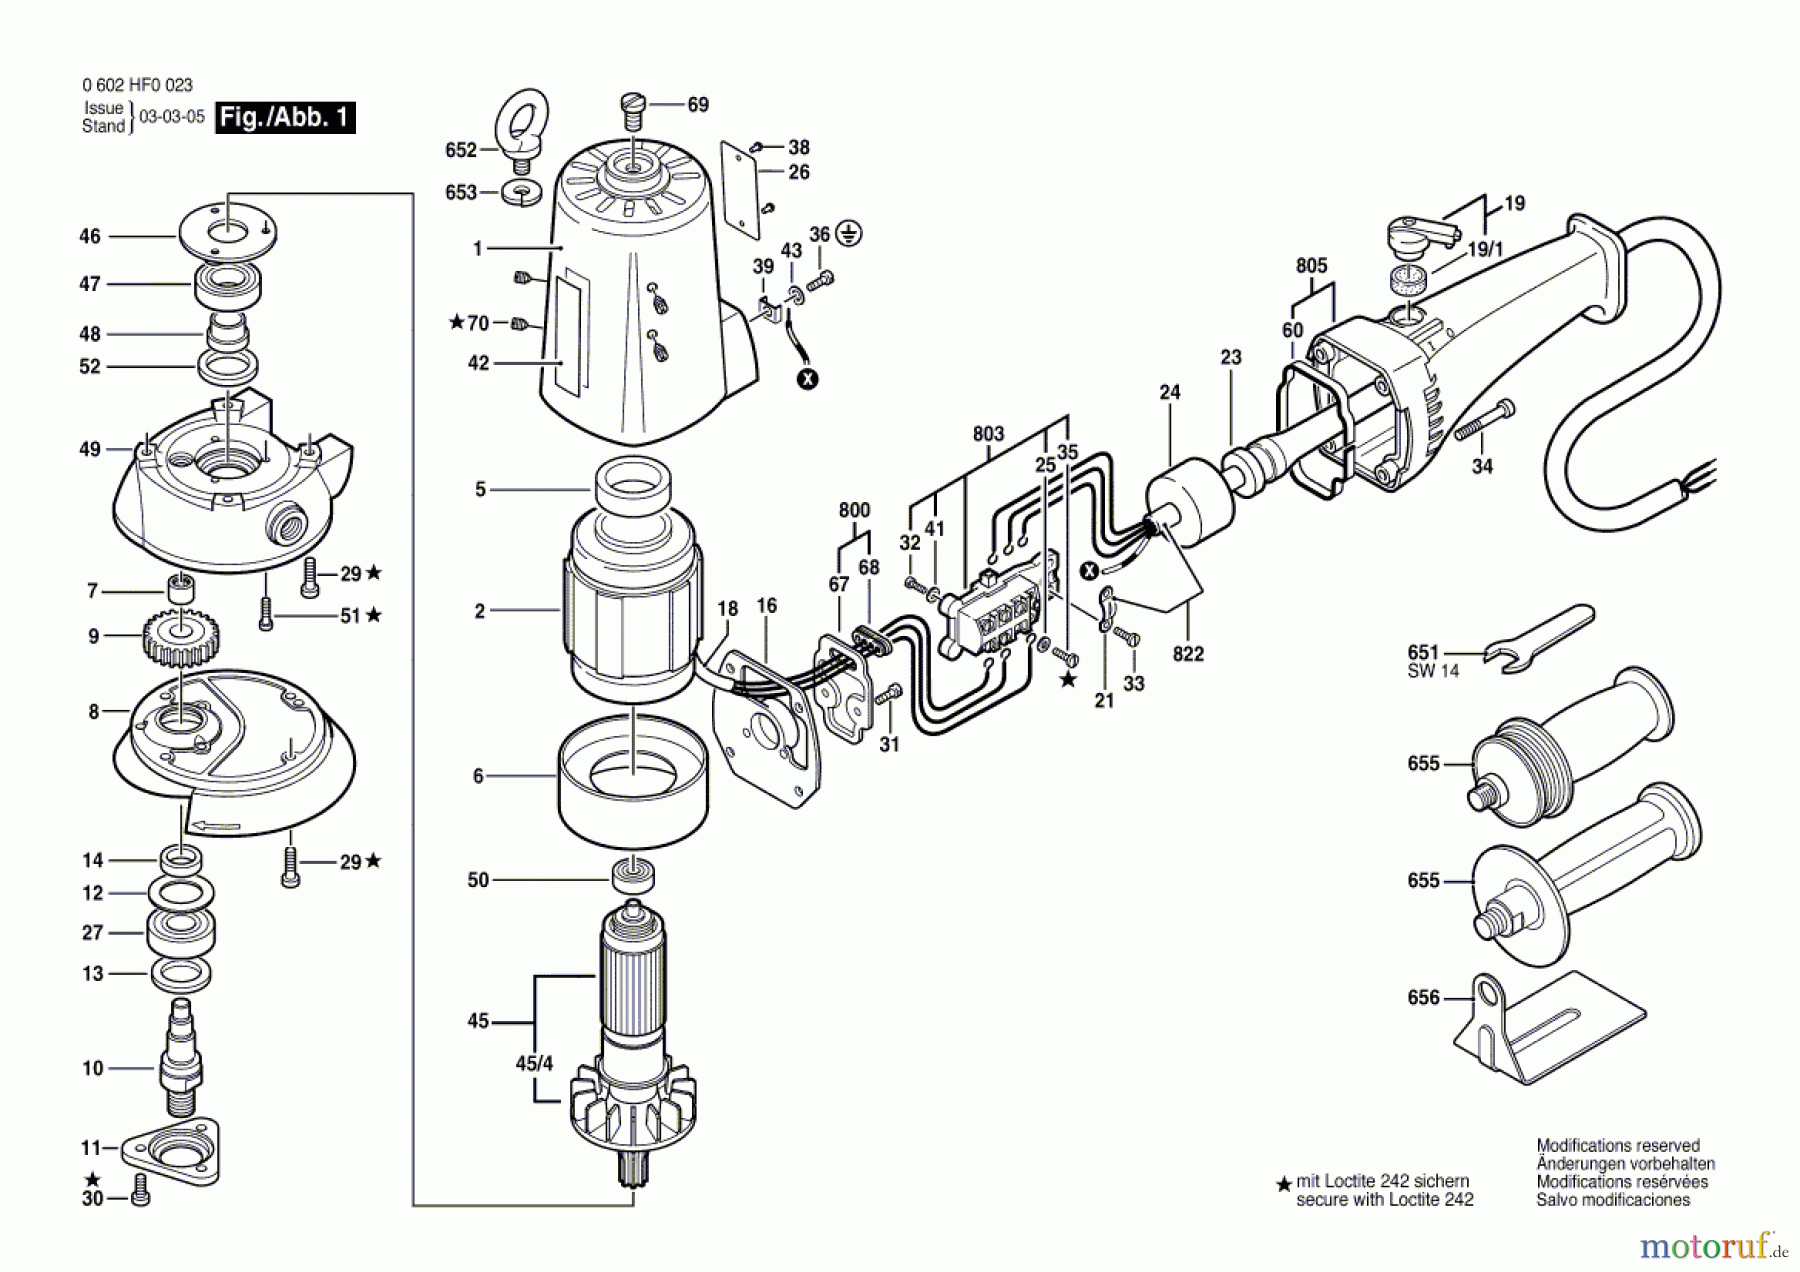  Bosch Werkzeug Hf-Tellerschleifer GR.75 Seite 1